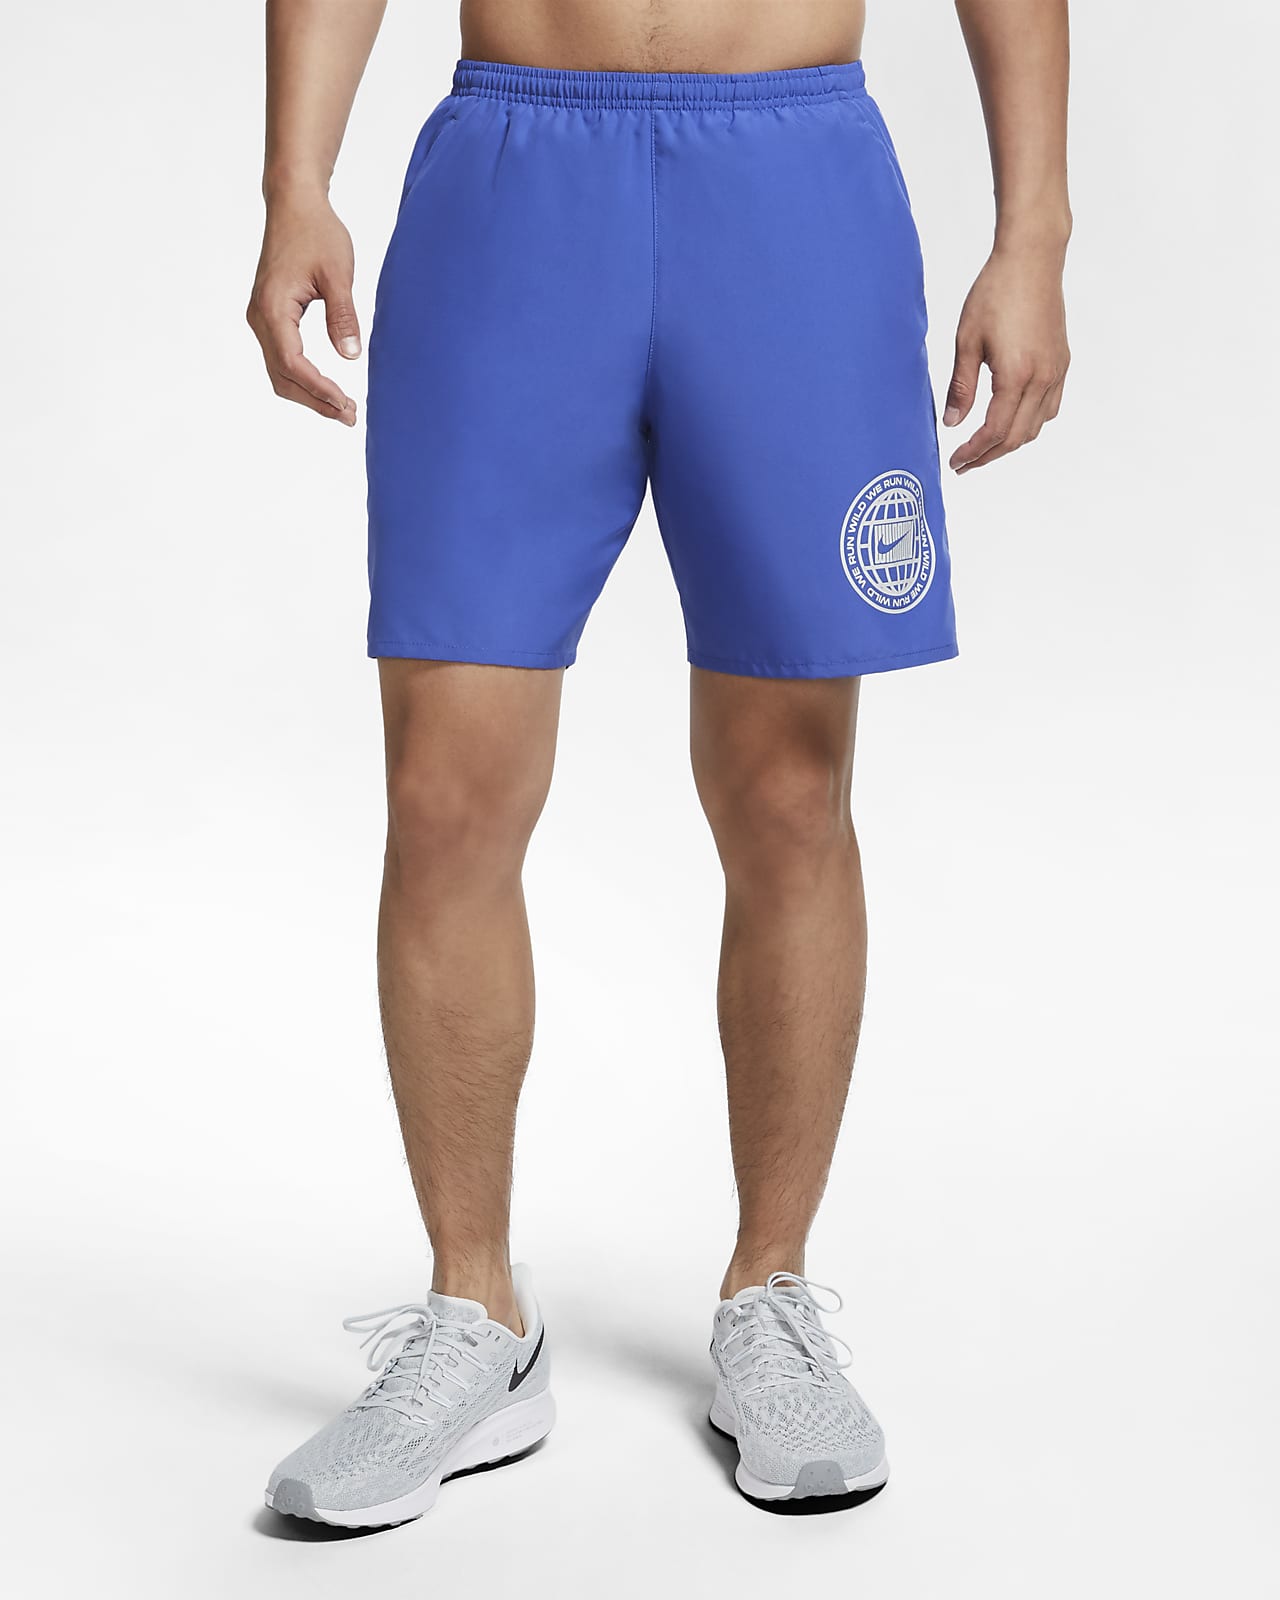 nike men's dri fit shorts sale